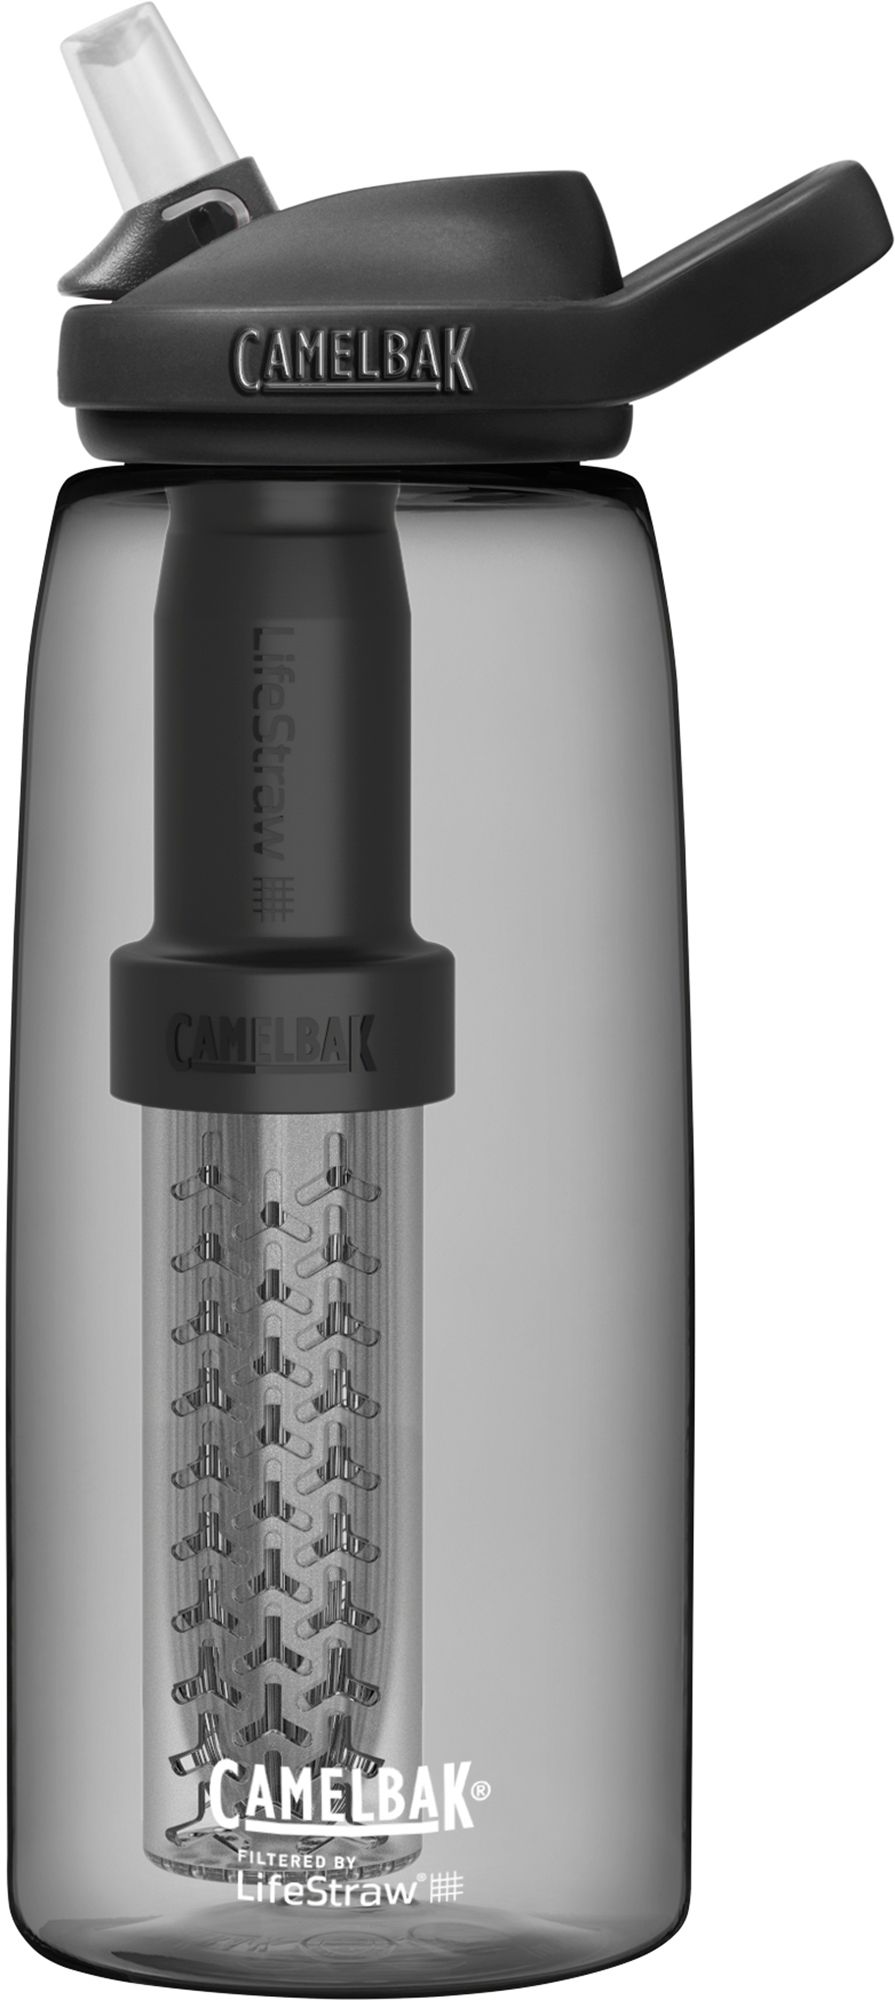 CamelBak Eddy+ LifeStraw oz. Filtered Water Bottle